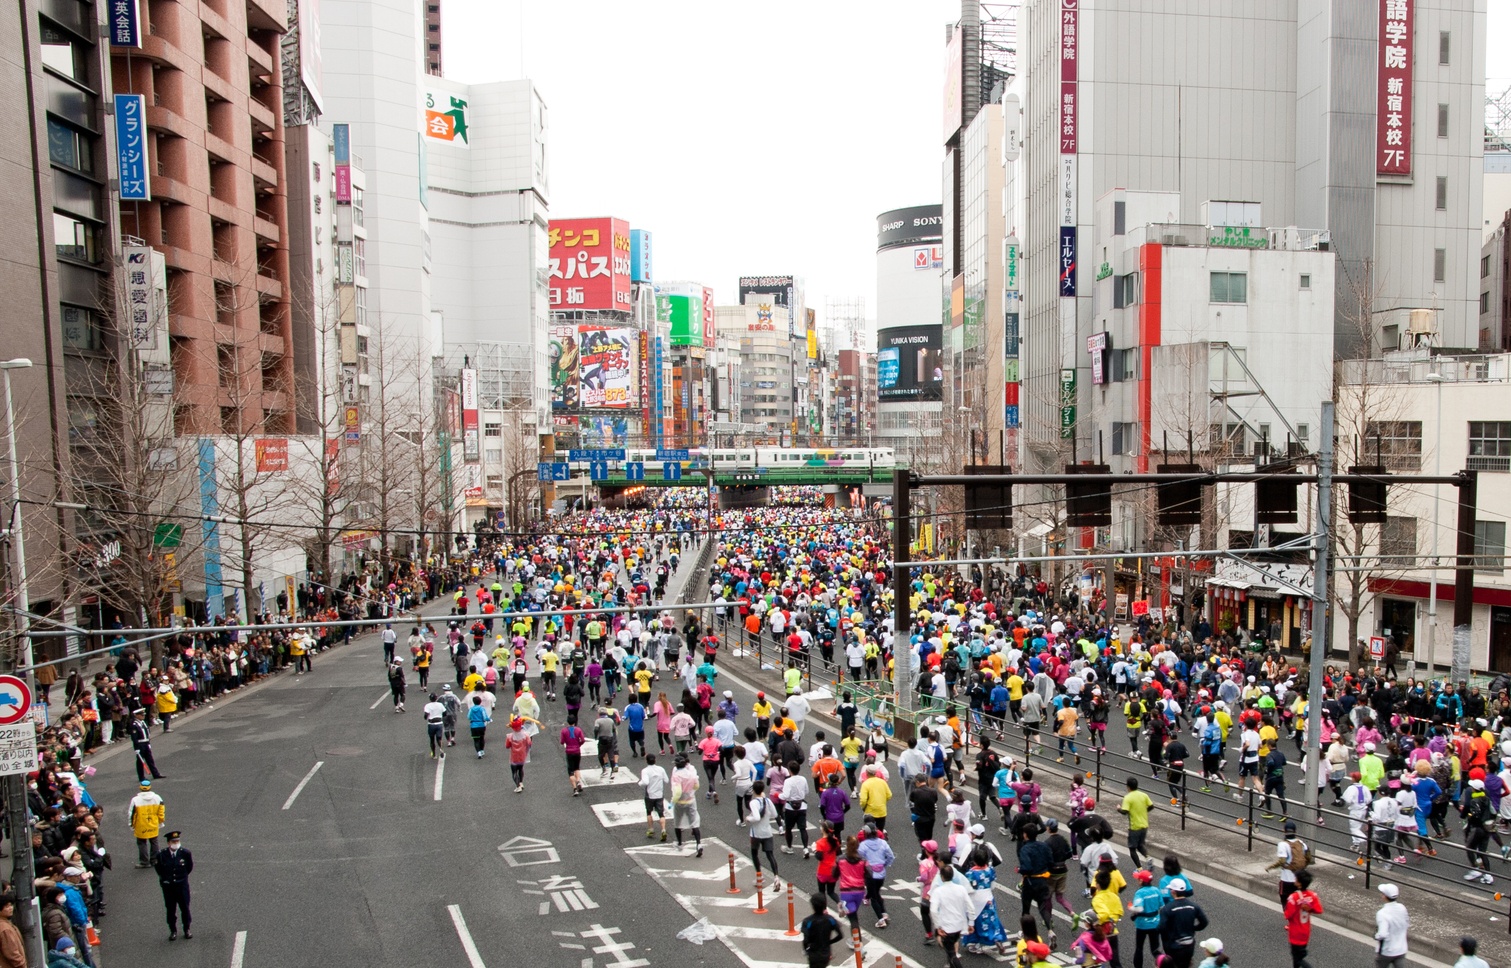 รวมงานวิ่งมาราธอนในญี่ปุ่น